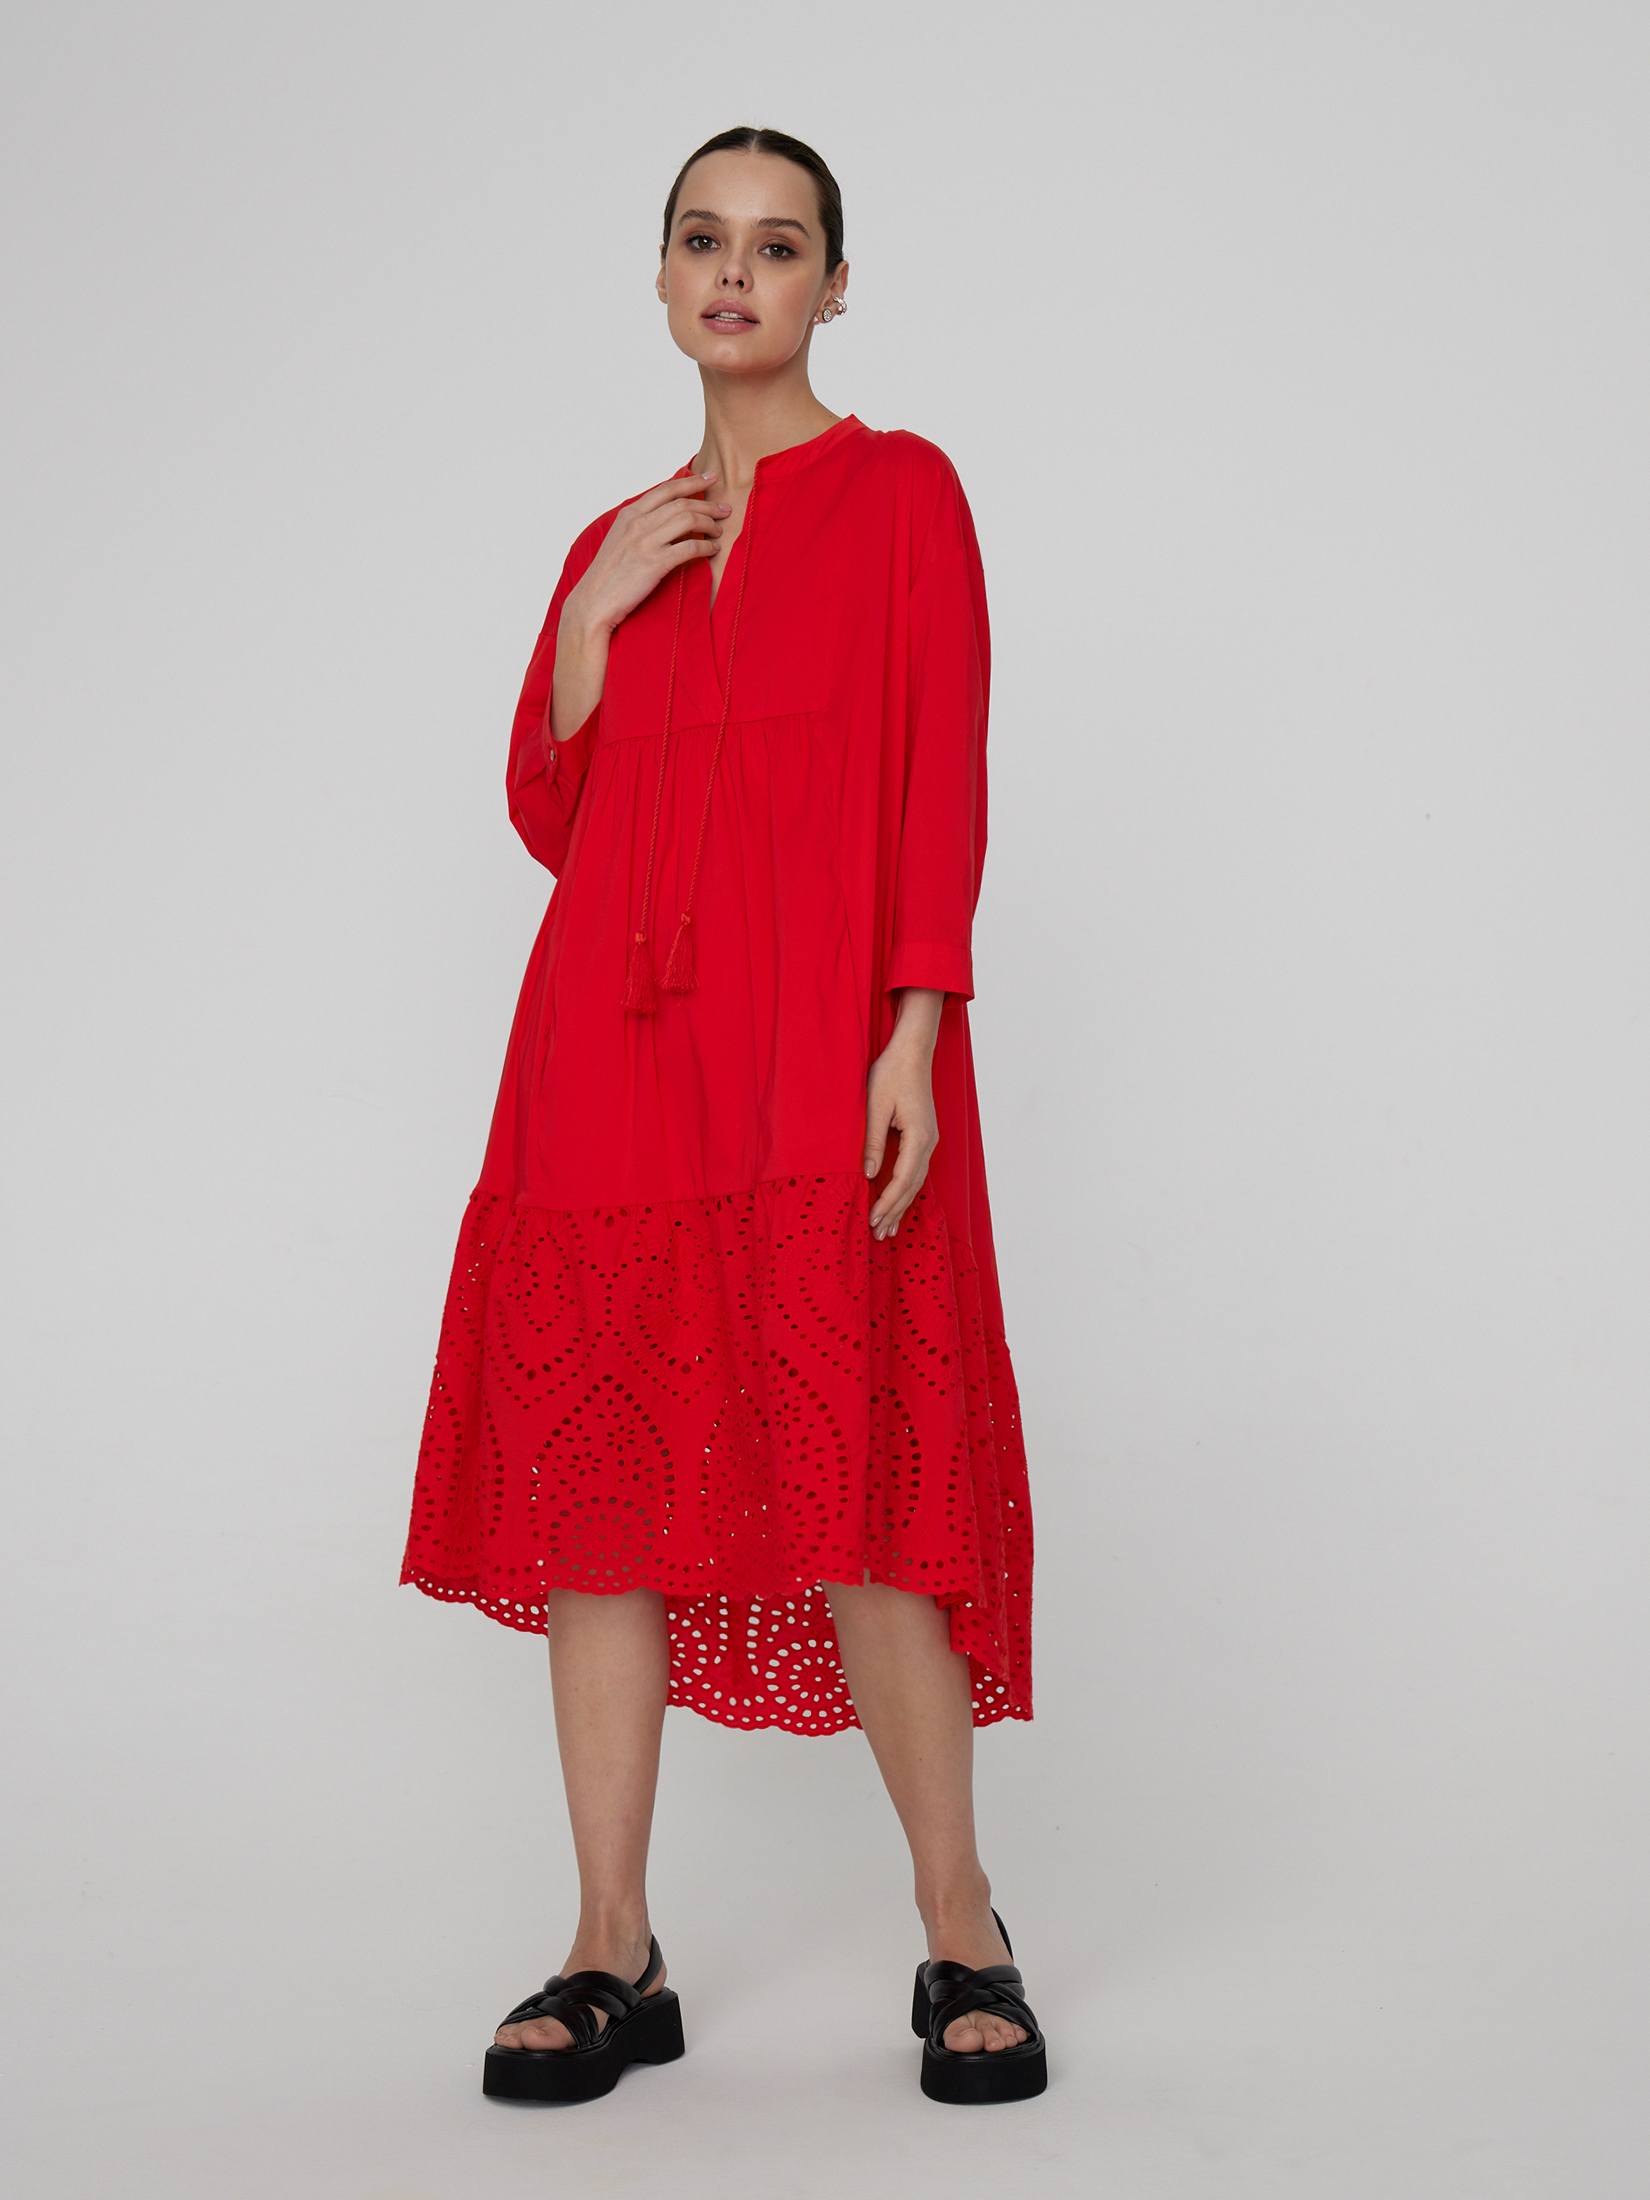 Платье женское красное платье ярко красное открытое 46 48 размер